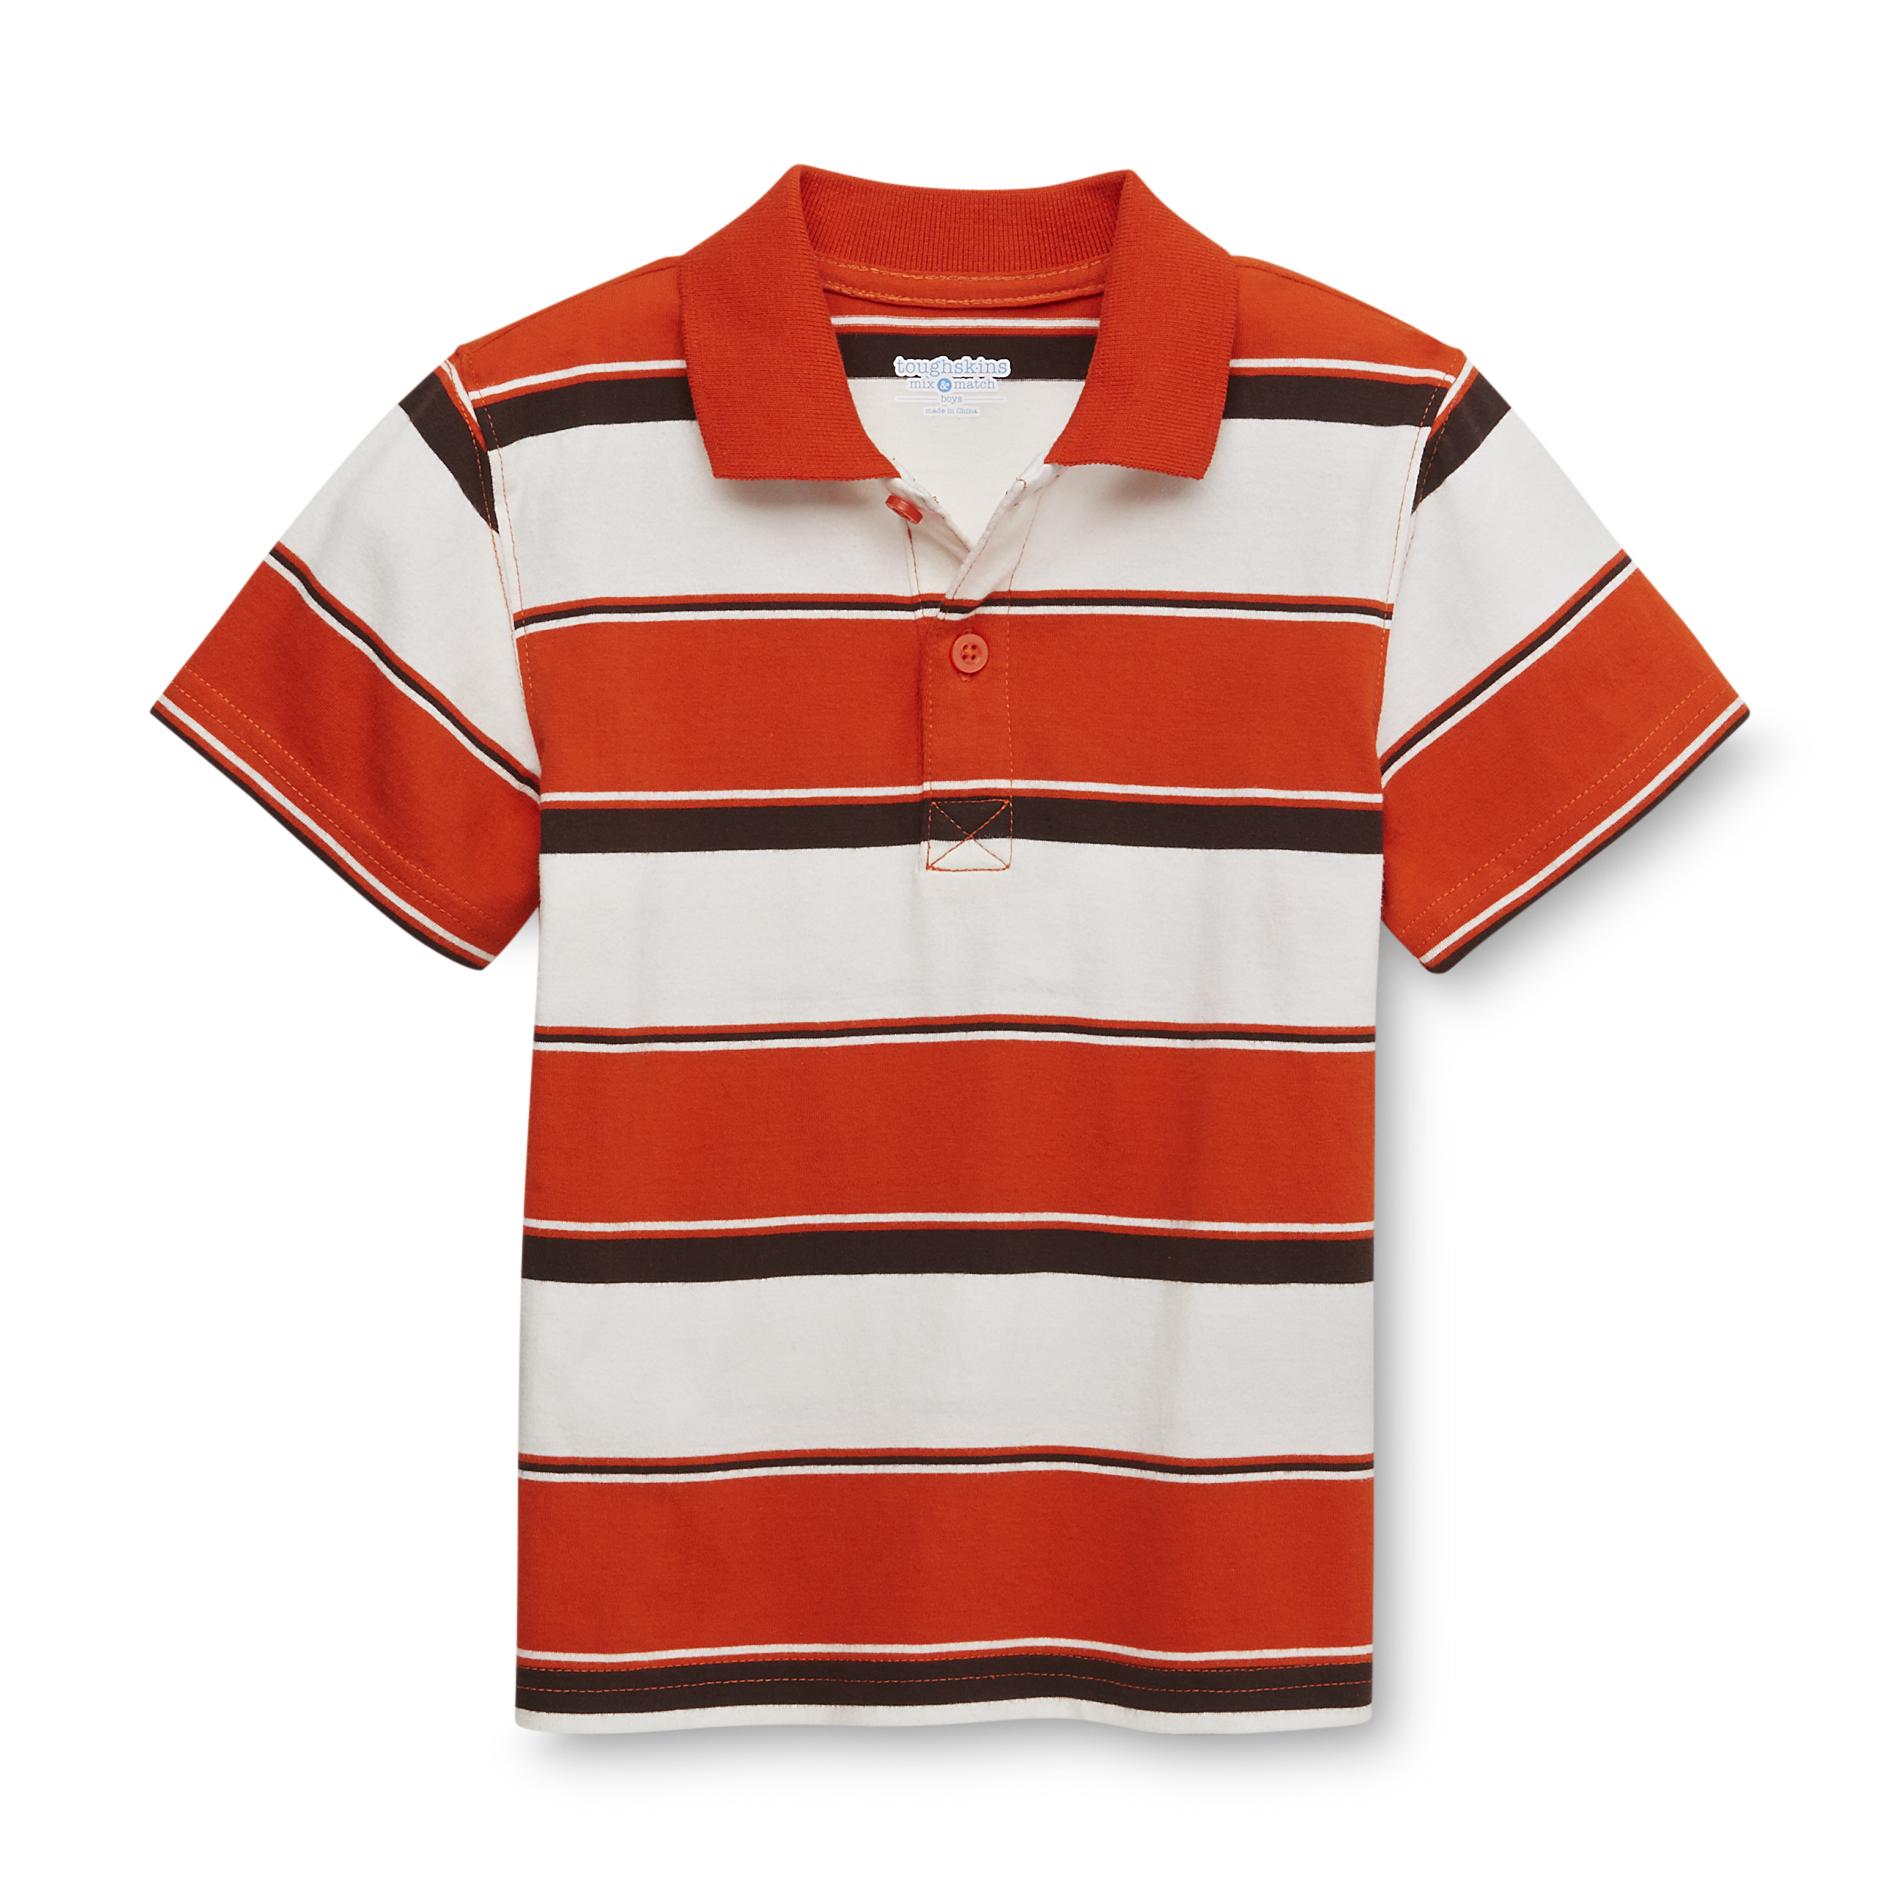 Toughskins Boy's Polo Shirt - Striped